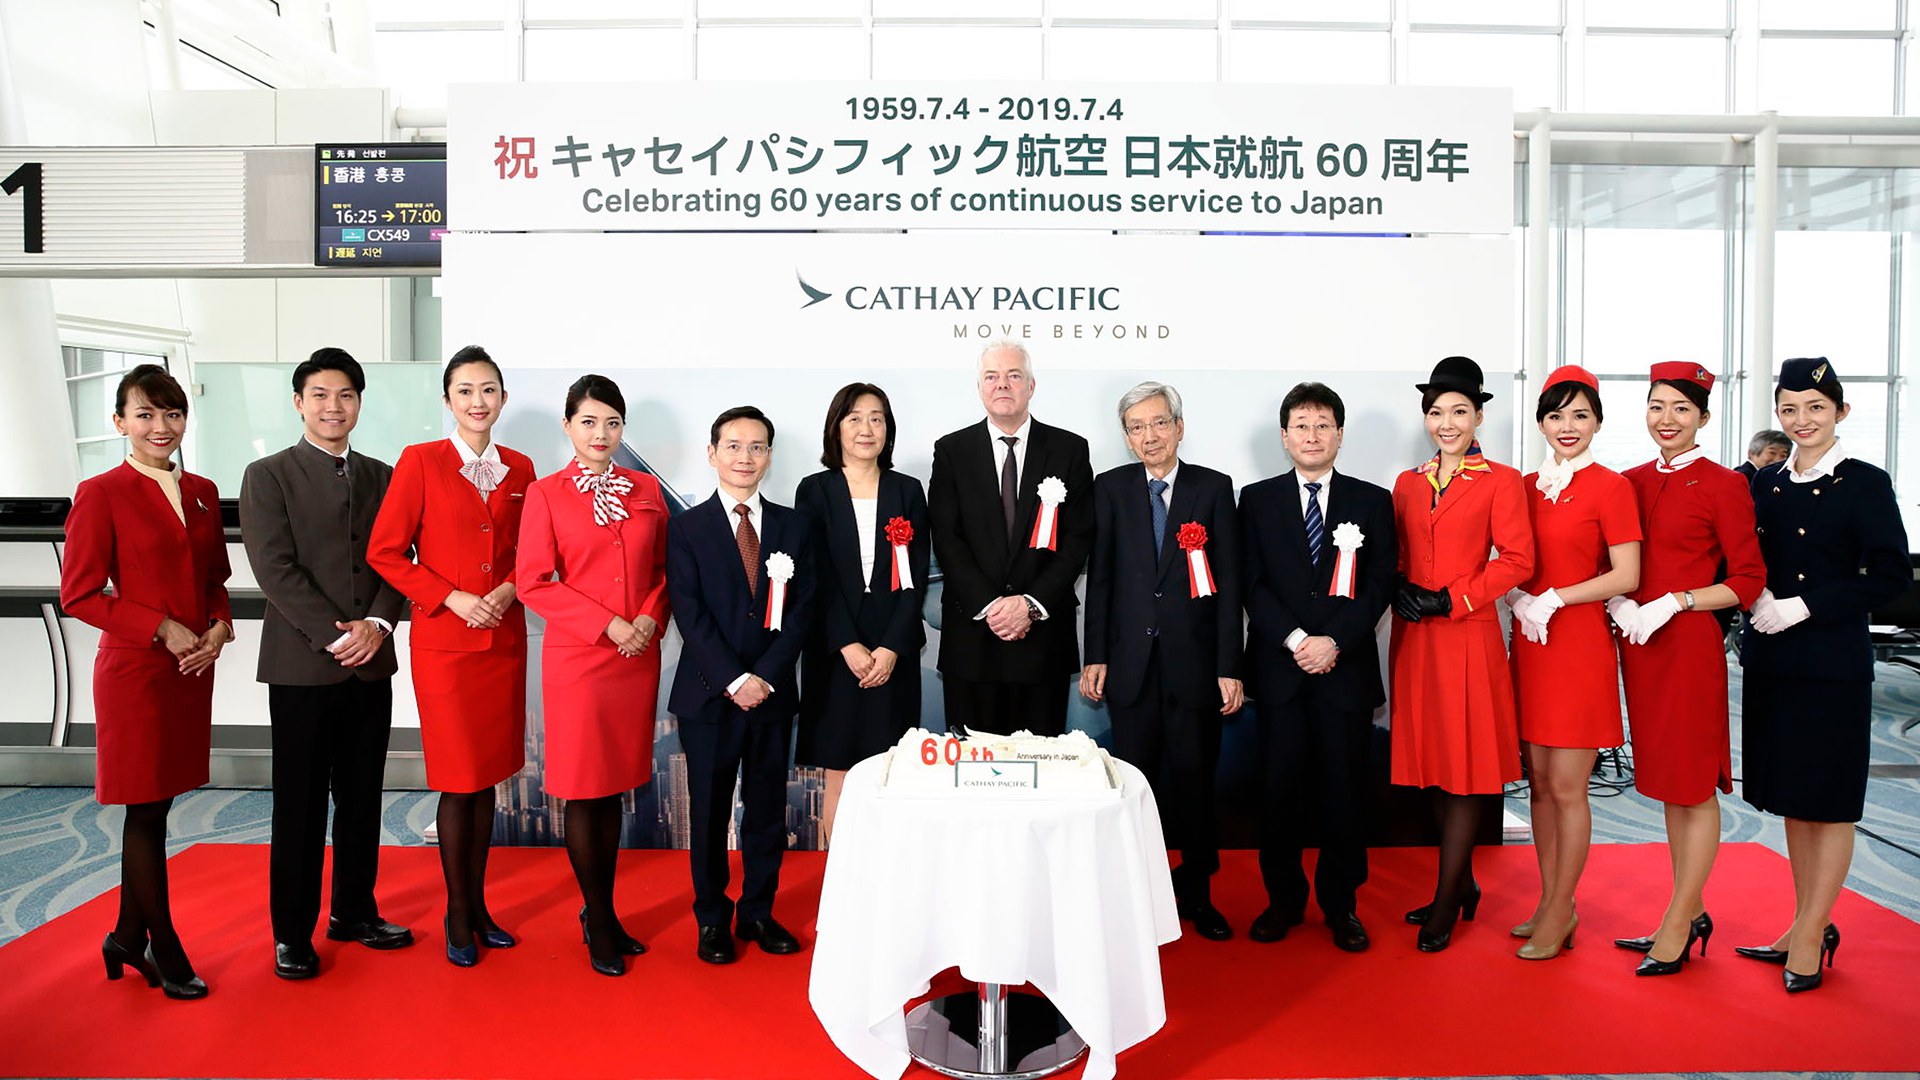 キャセイパシフィック航空が日本-香港便就航60周年を祝った